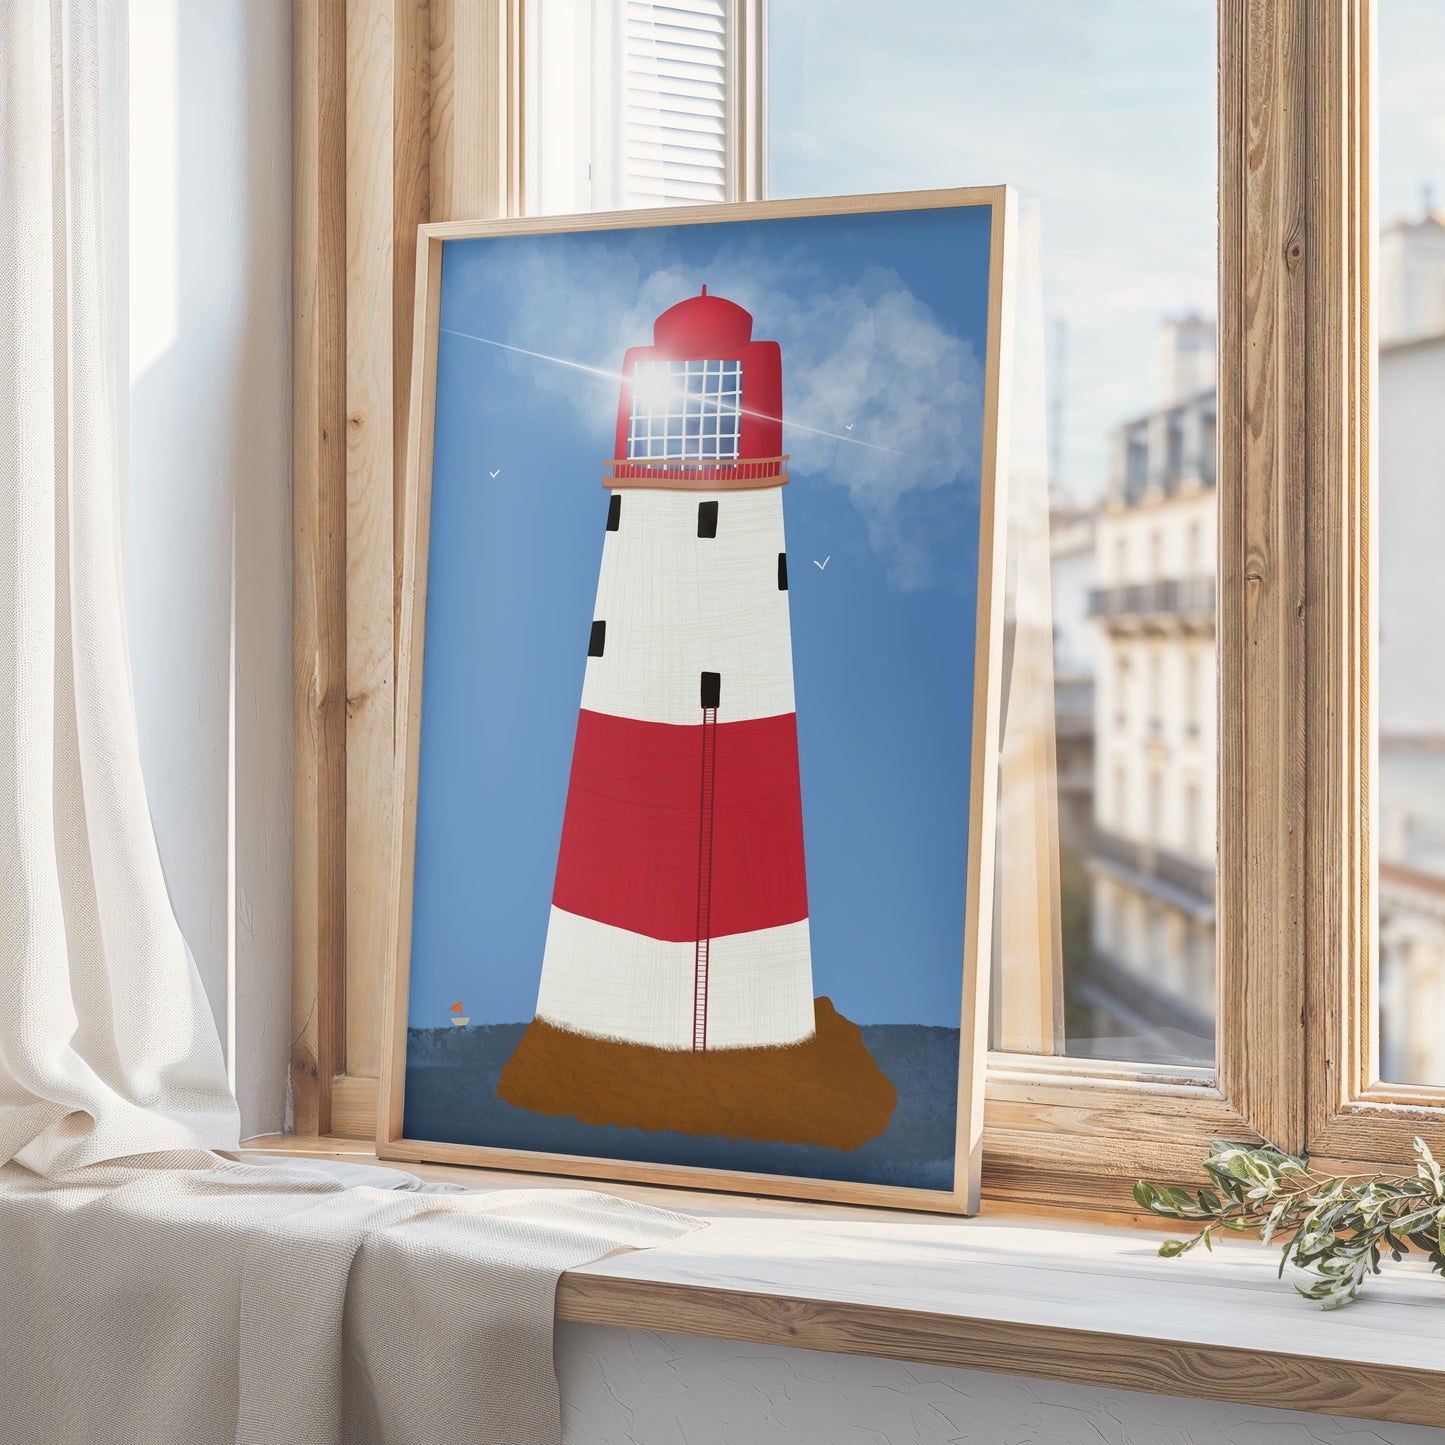 Beachy Head Lighthouse Print